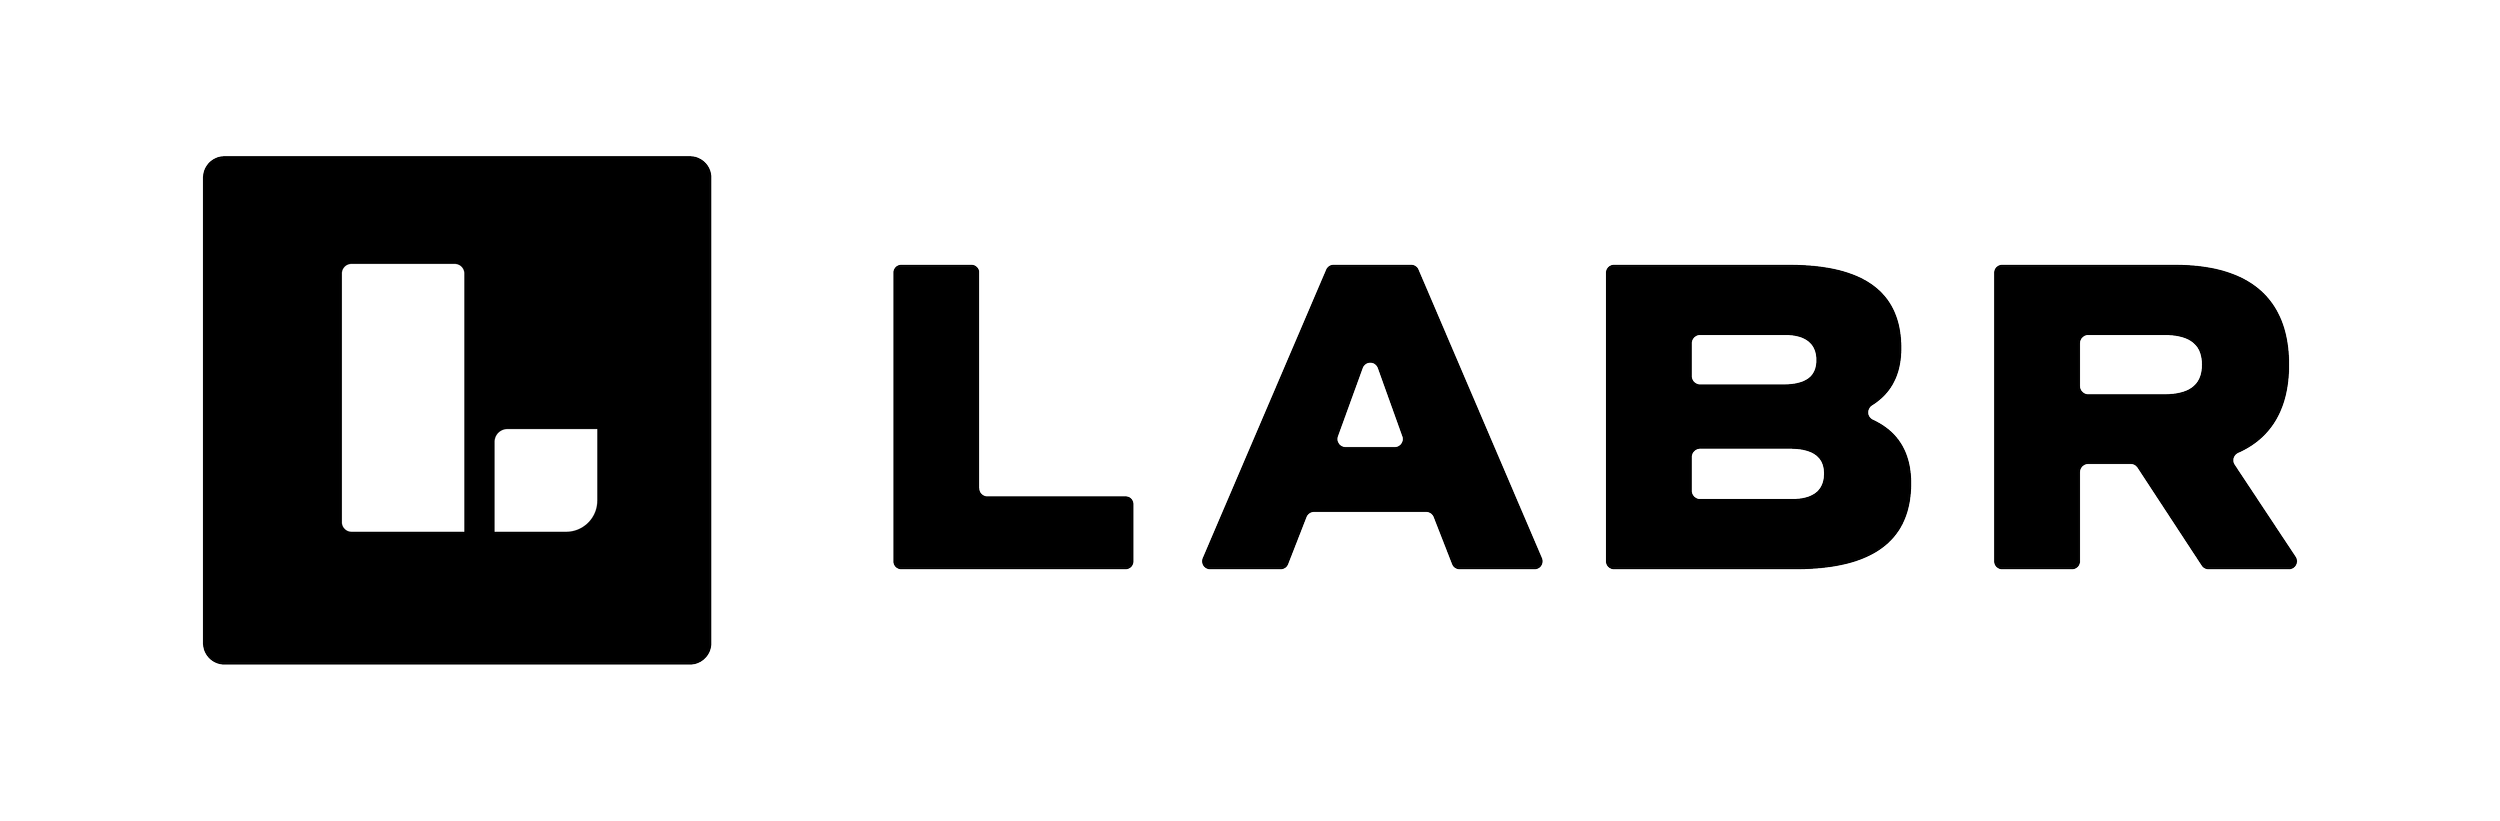 LABR-Final-Logo.png